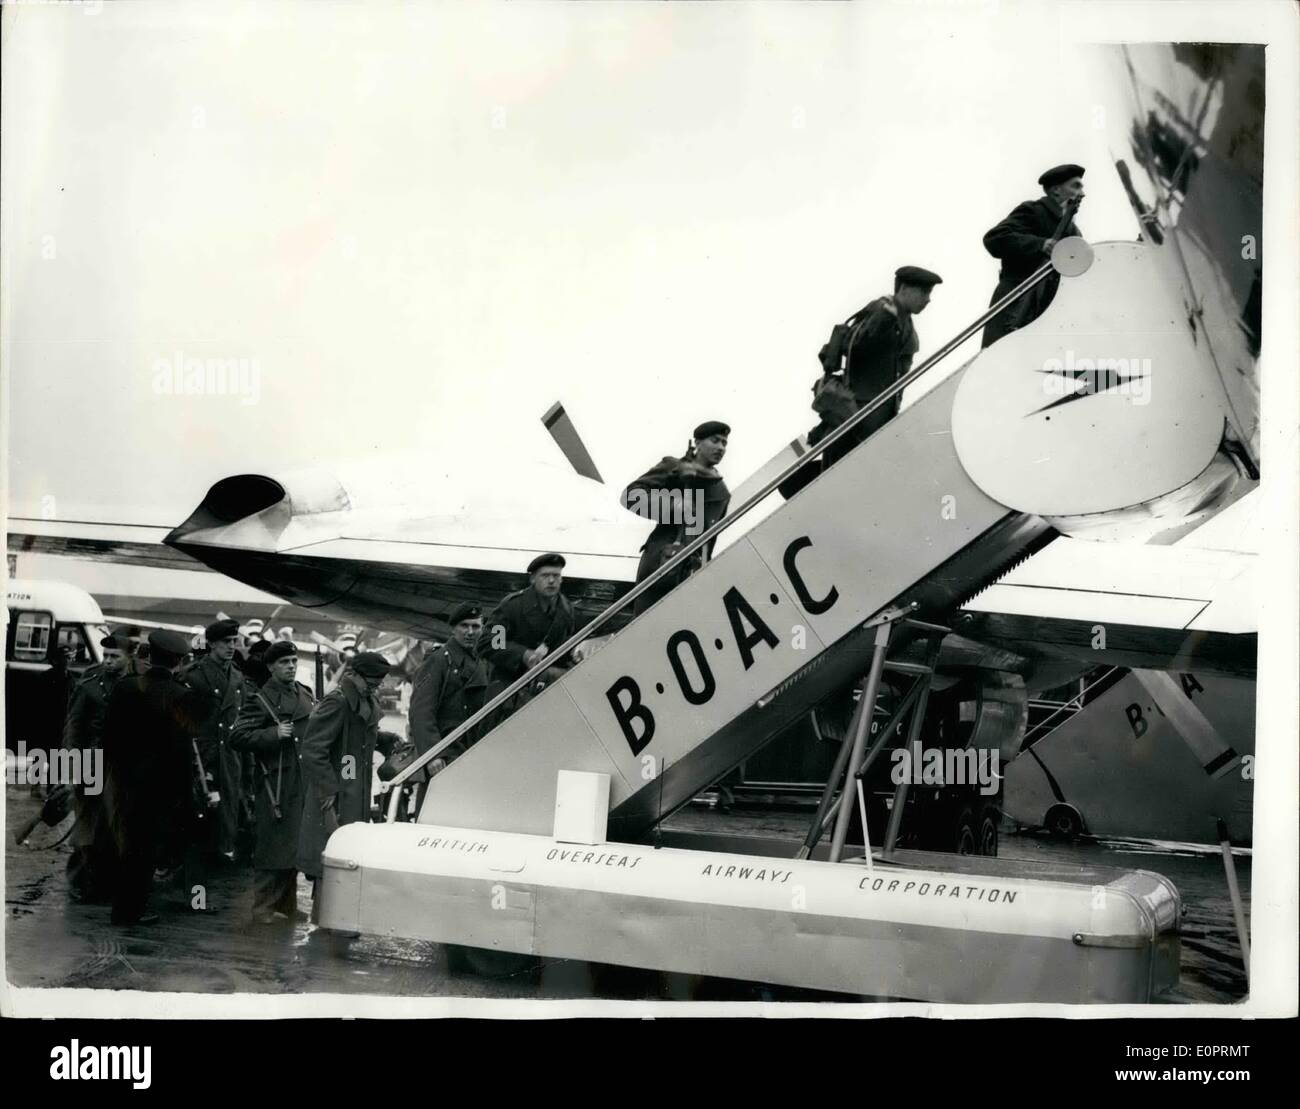 11 novembre 1956 - Les troupes voler à la Méditerranée.. Quitter l'aéroport de Londres. Photo Keystone montre :- les troupes britanniques à bord d'un Bristol Britannia turbo-avion de ligne à l'aéroport de Londres hier pour la zone méditerranéenne. Banque D'Images